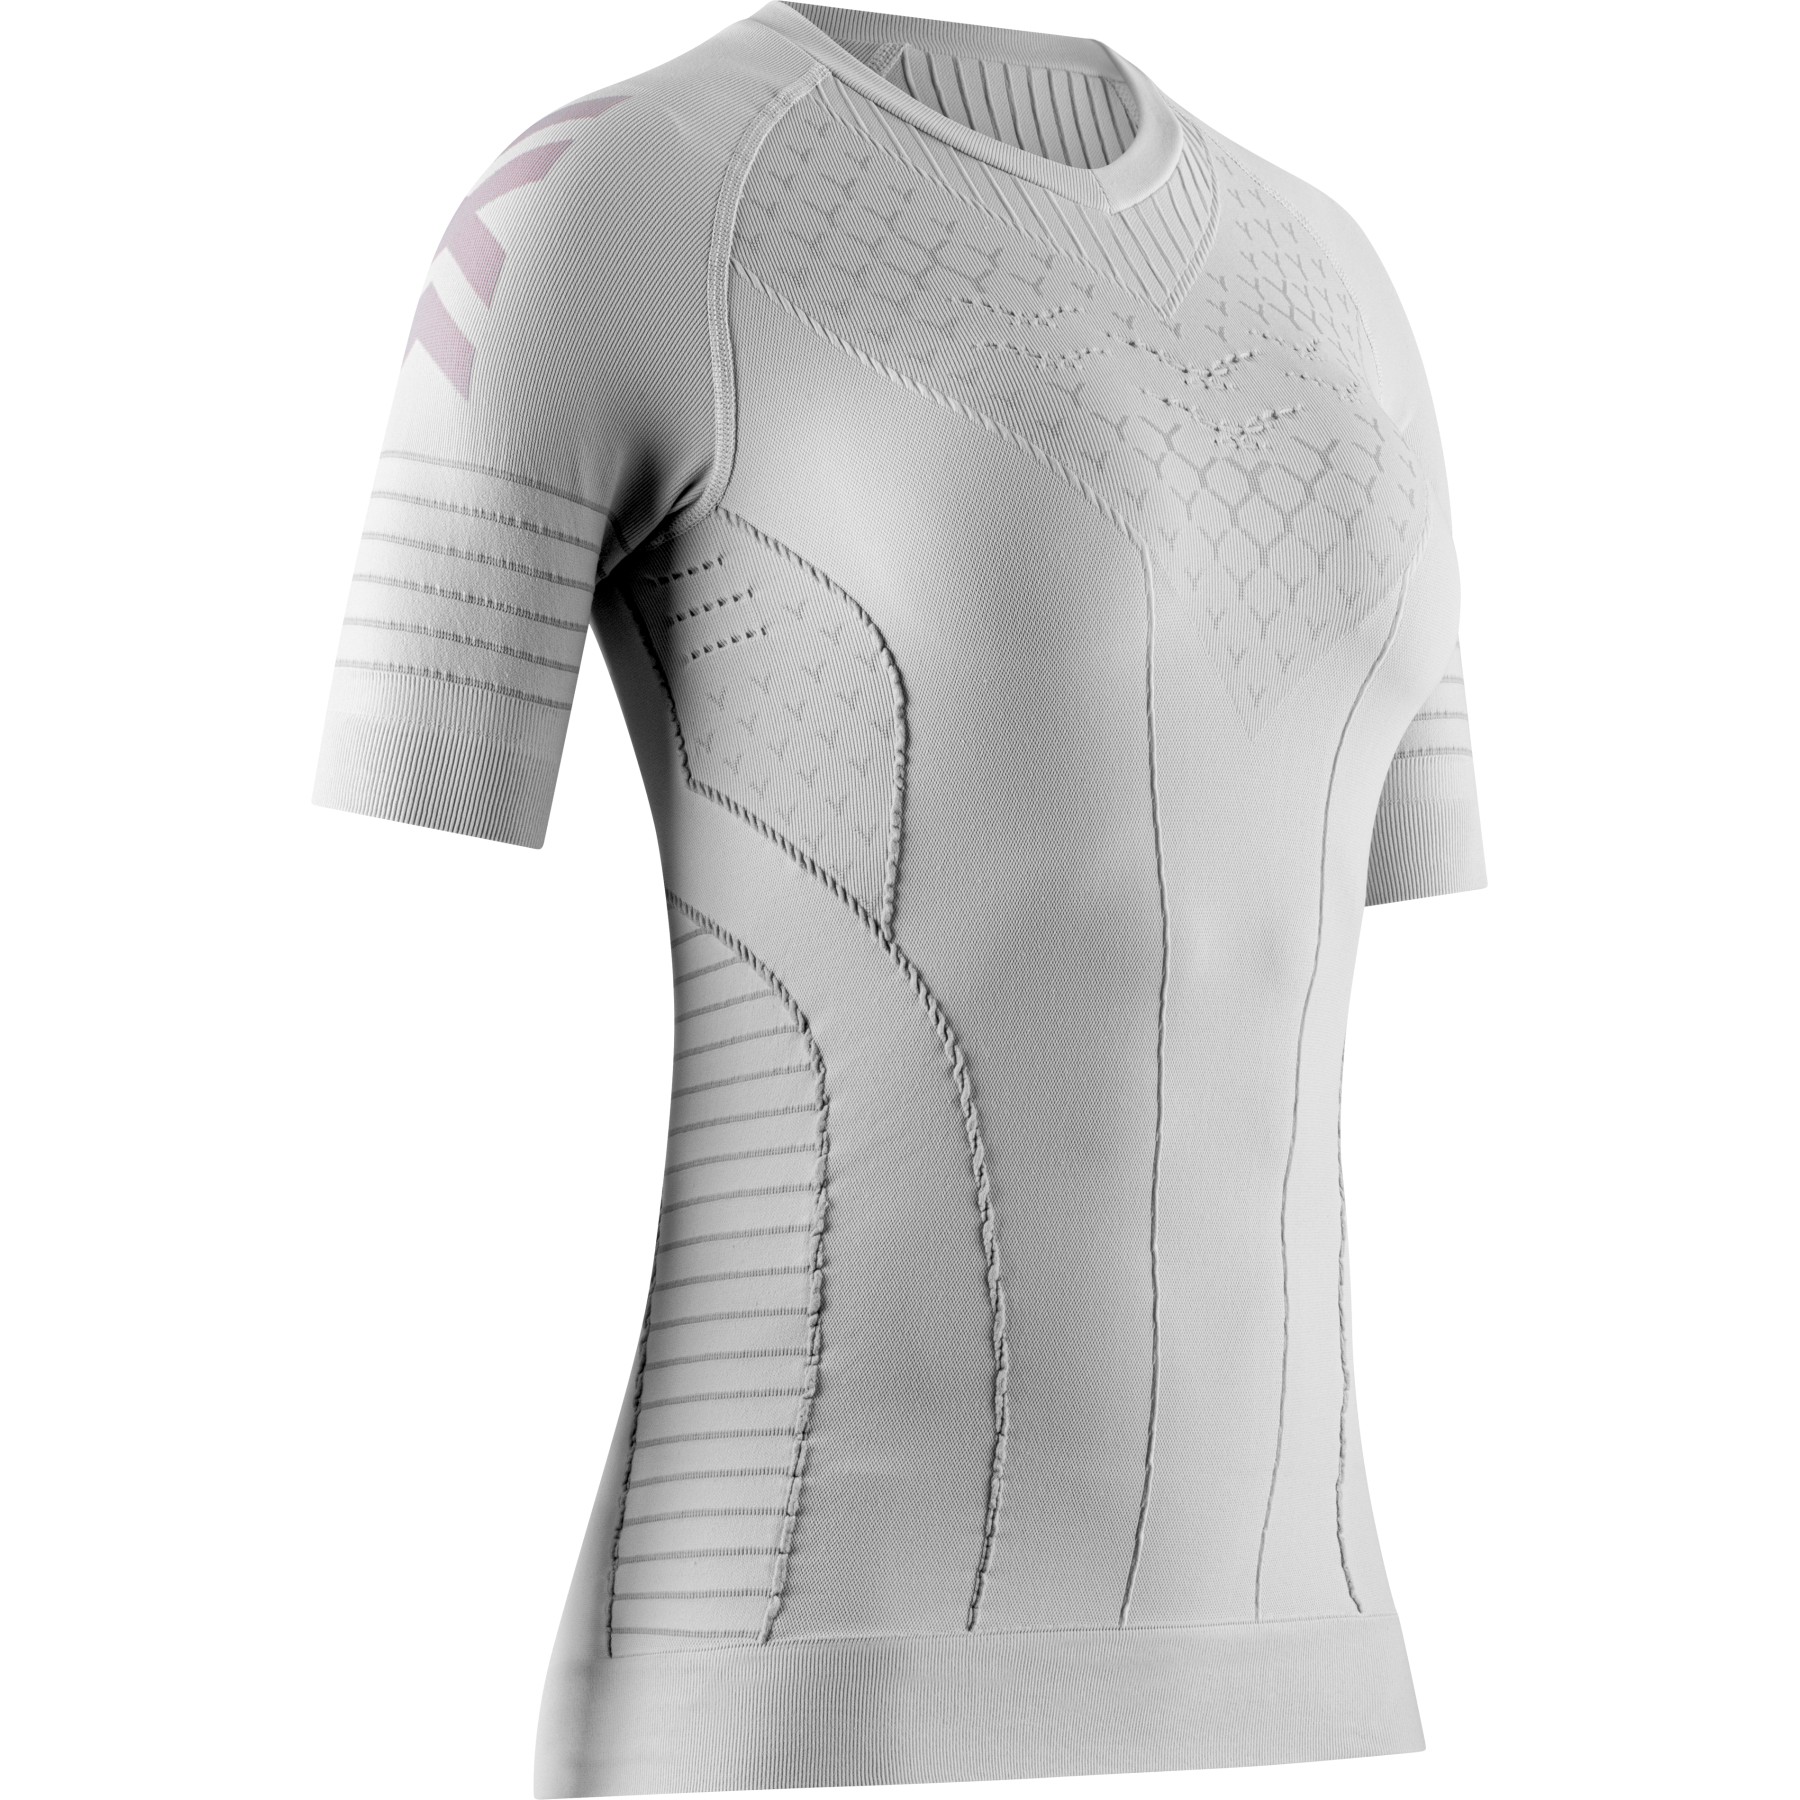 Produktbild von X-Bionic Twyce Race Laufshirt Damen - arctic white/pearl grey